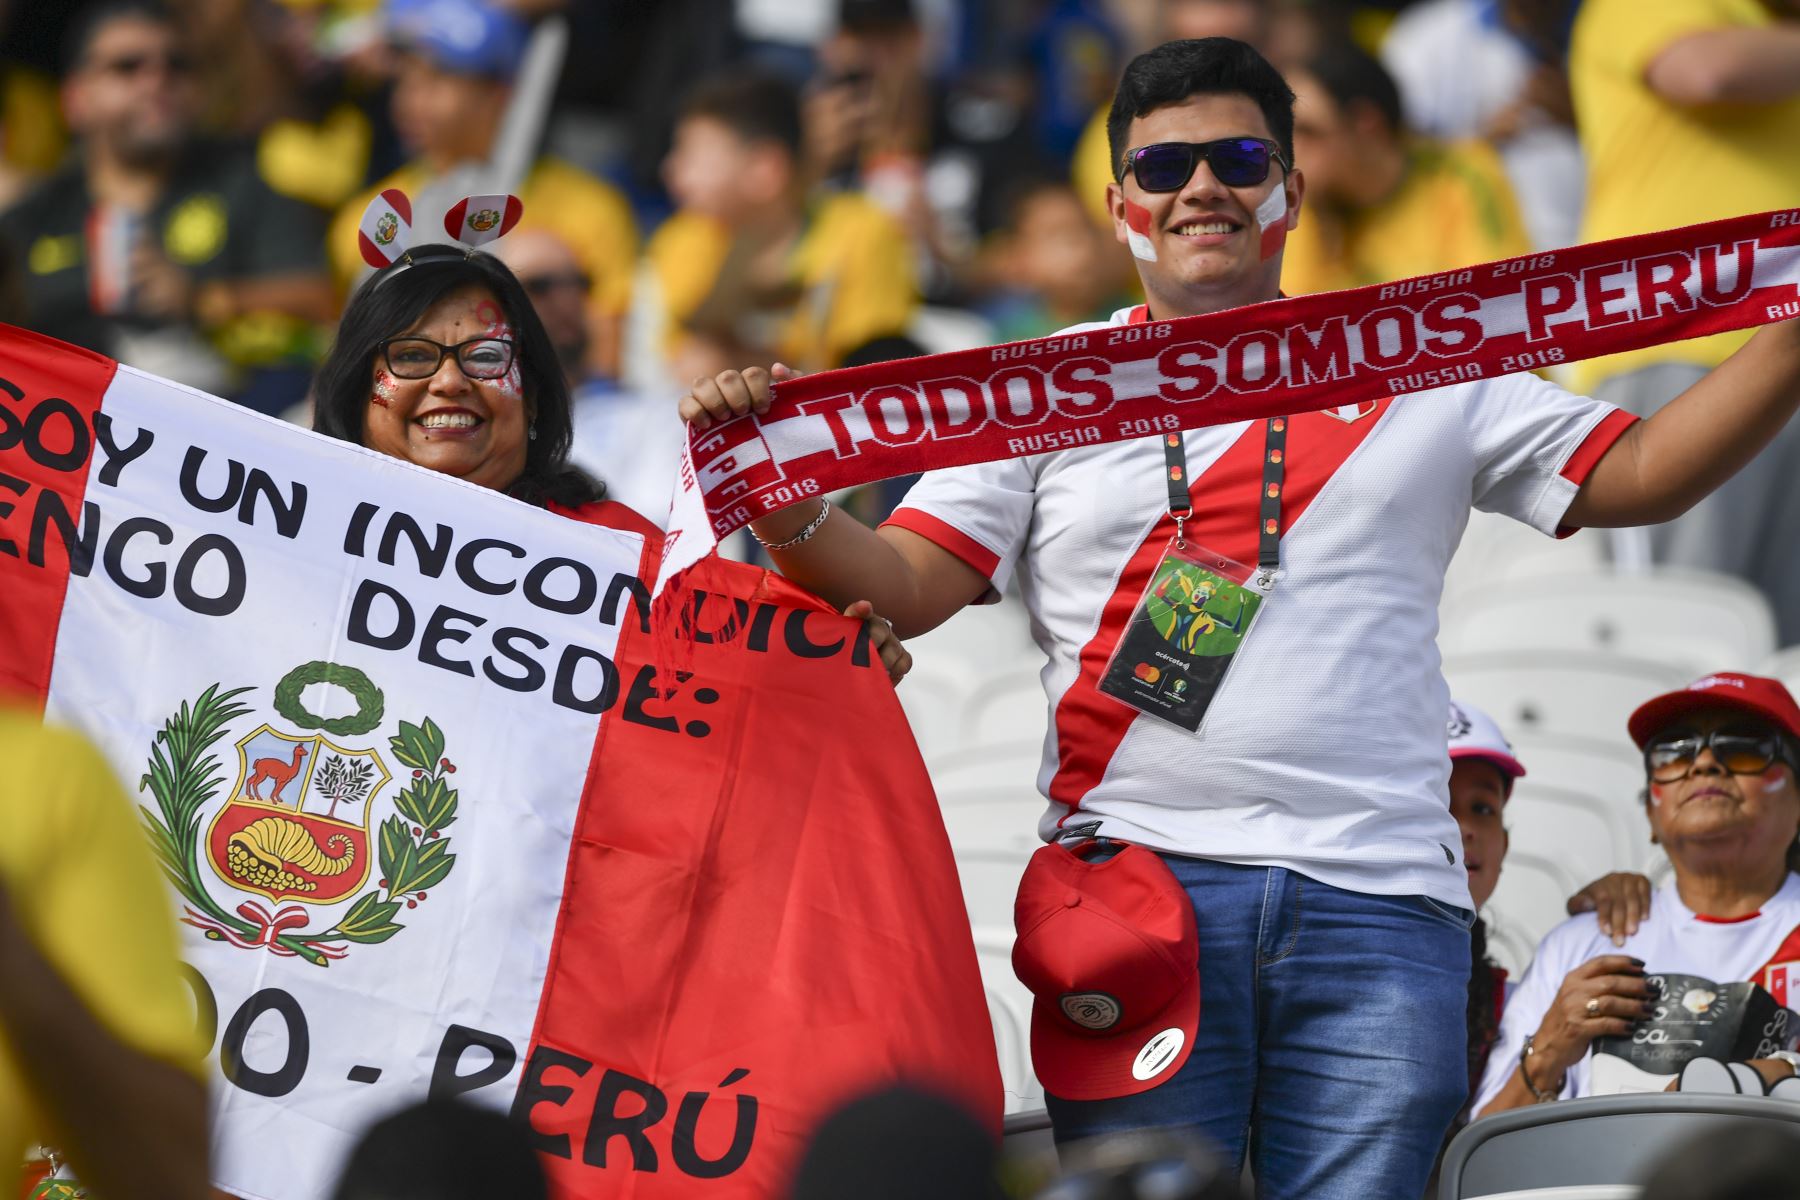 Los fanáticos de Perú esperan el inicio del partido del torneo de fútbol de la Copa América contra Brasil en el Corinthians Arena en Sao Paulo, Brasil.
Foto: AFP